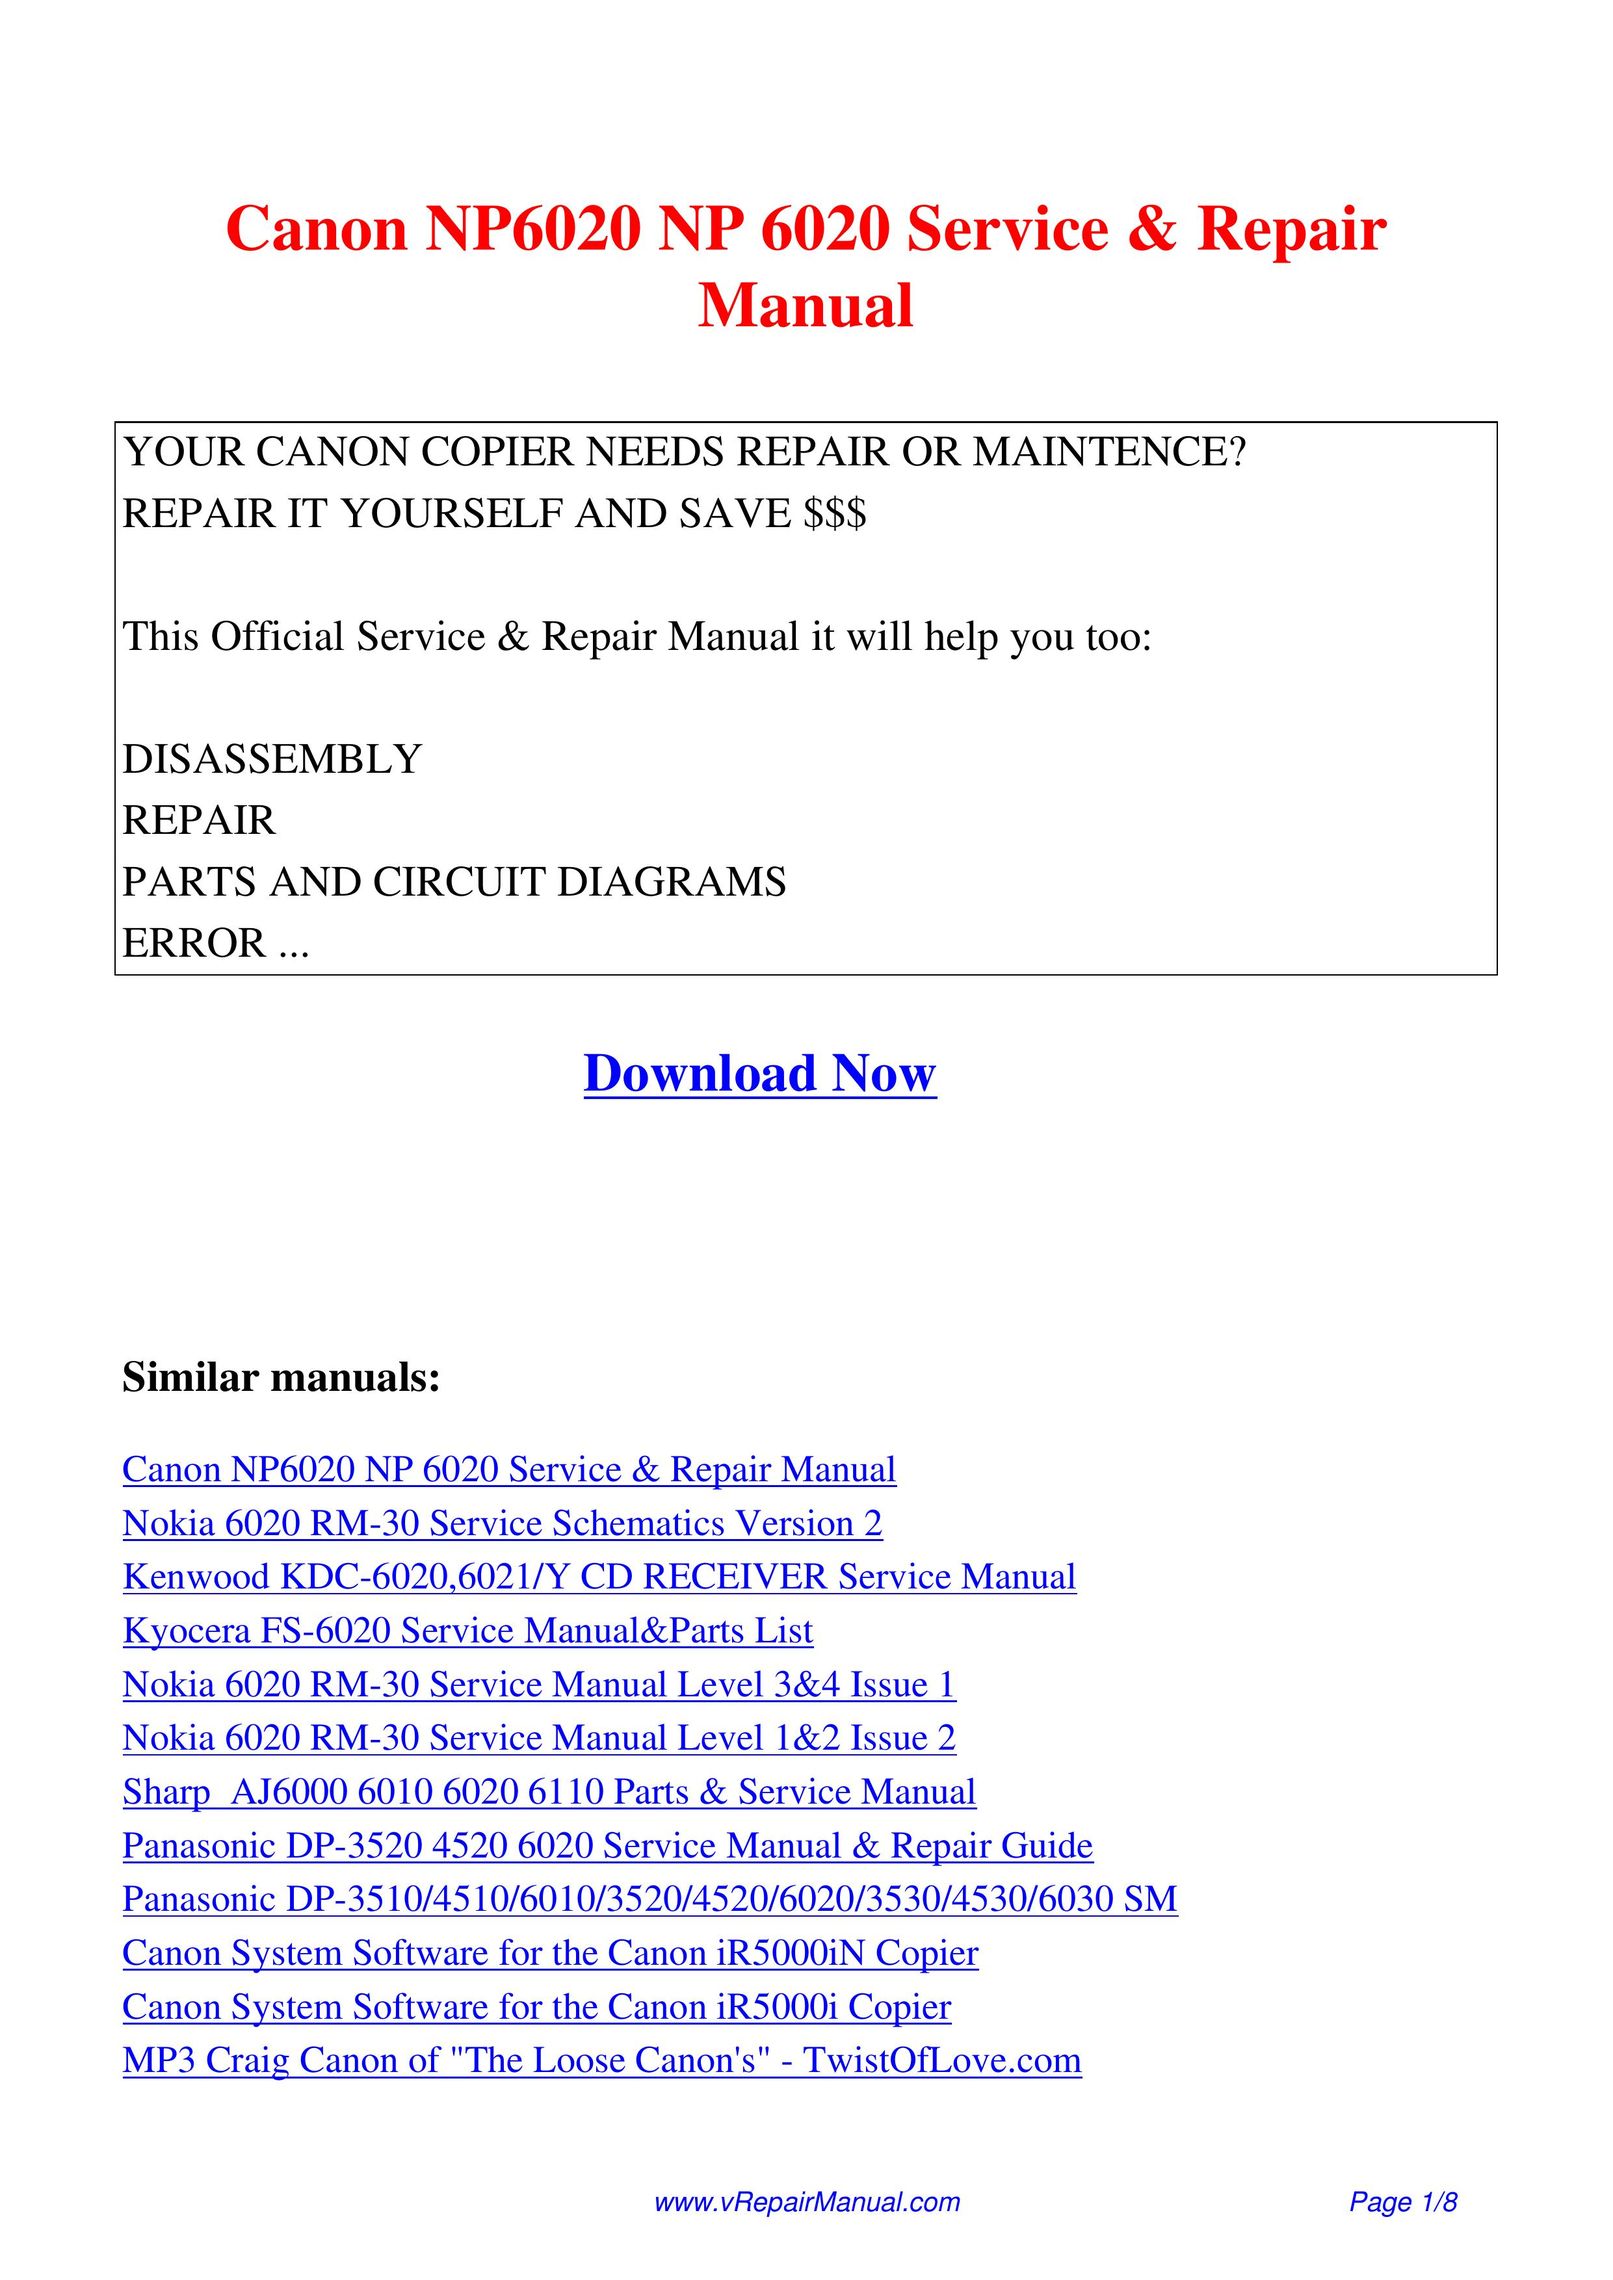 Canon NP6020 Copier User Manual